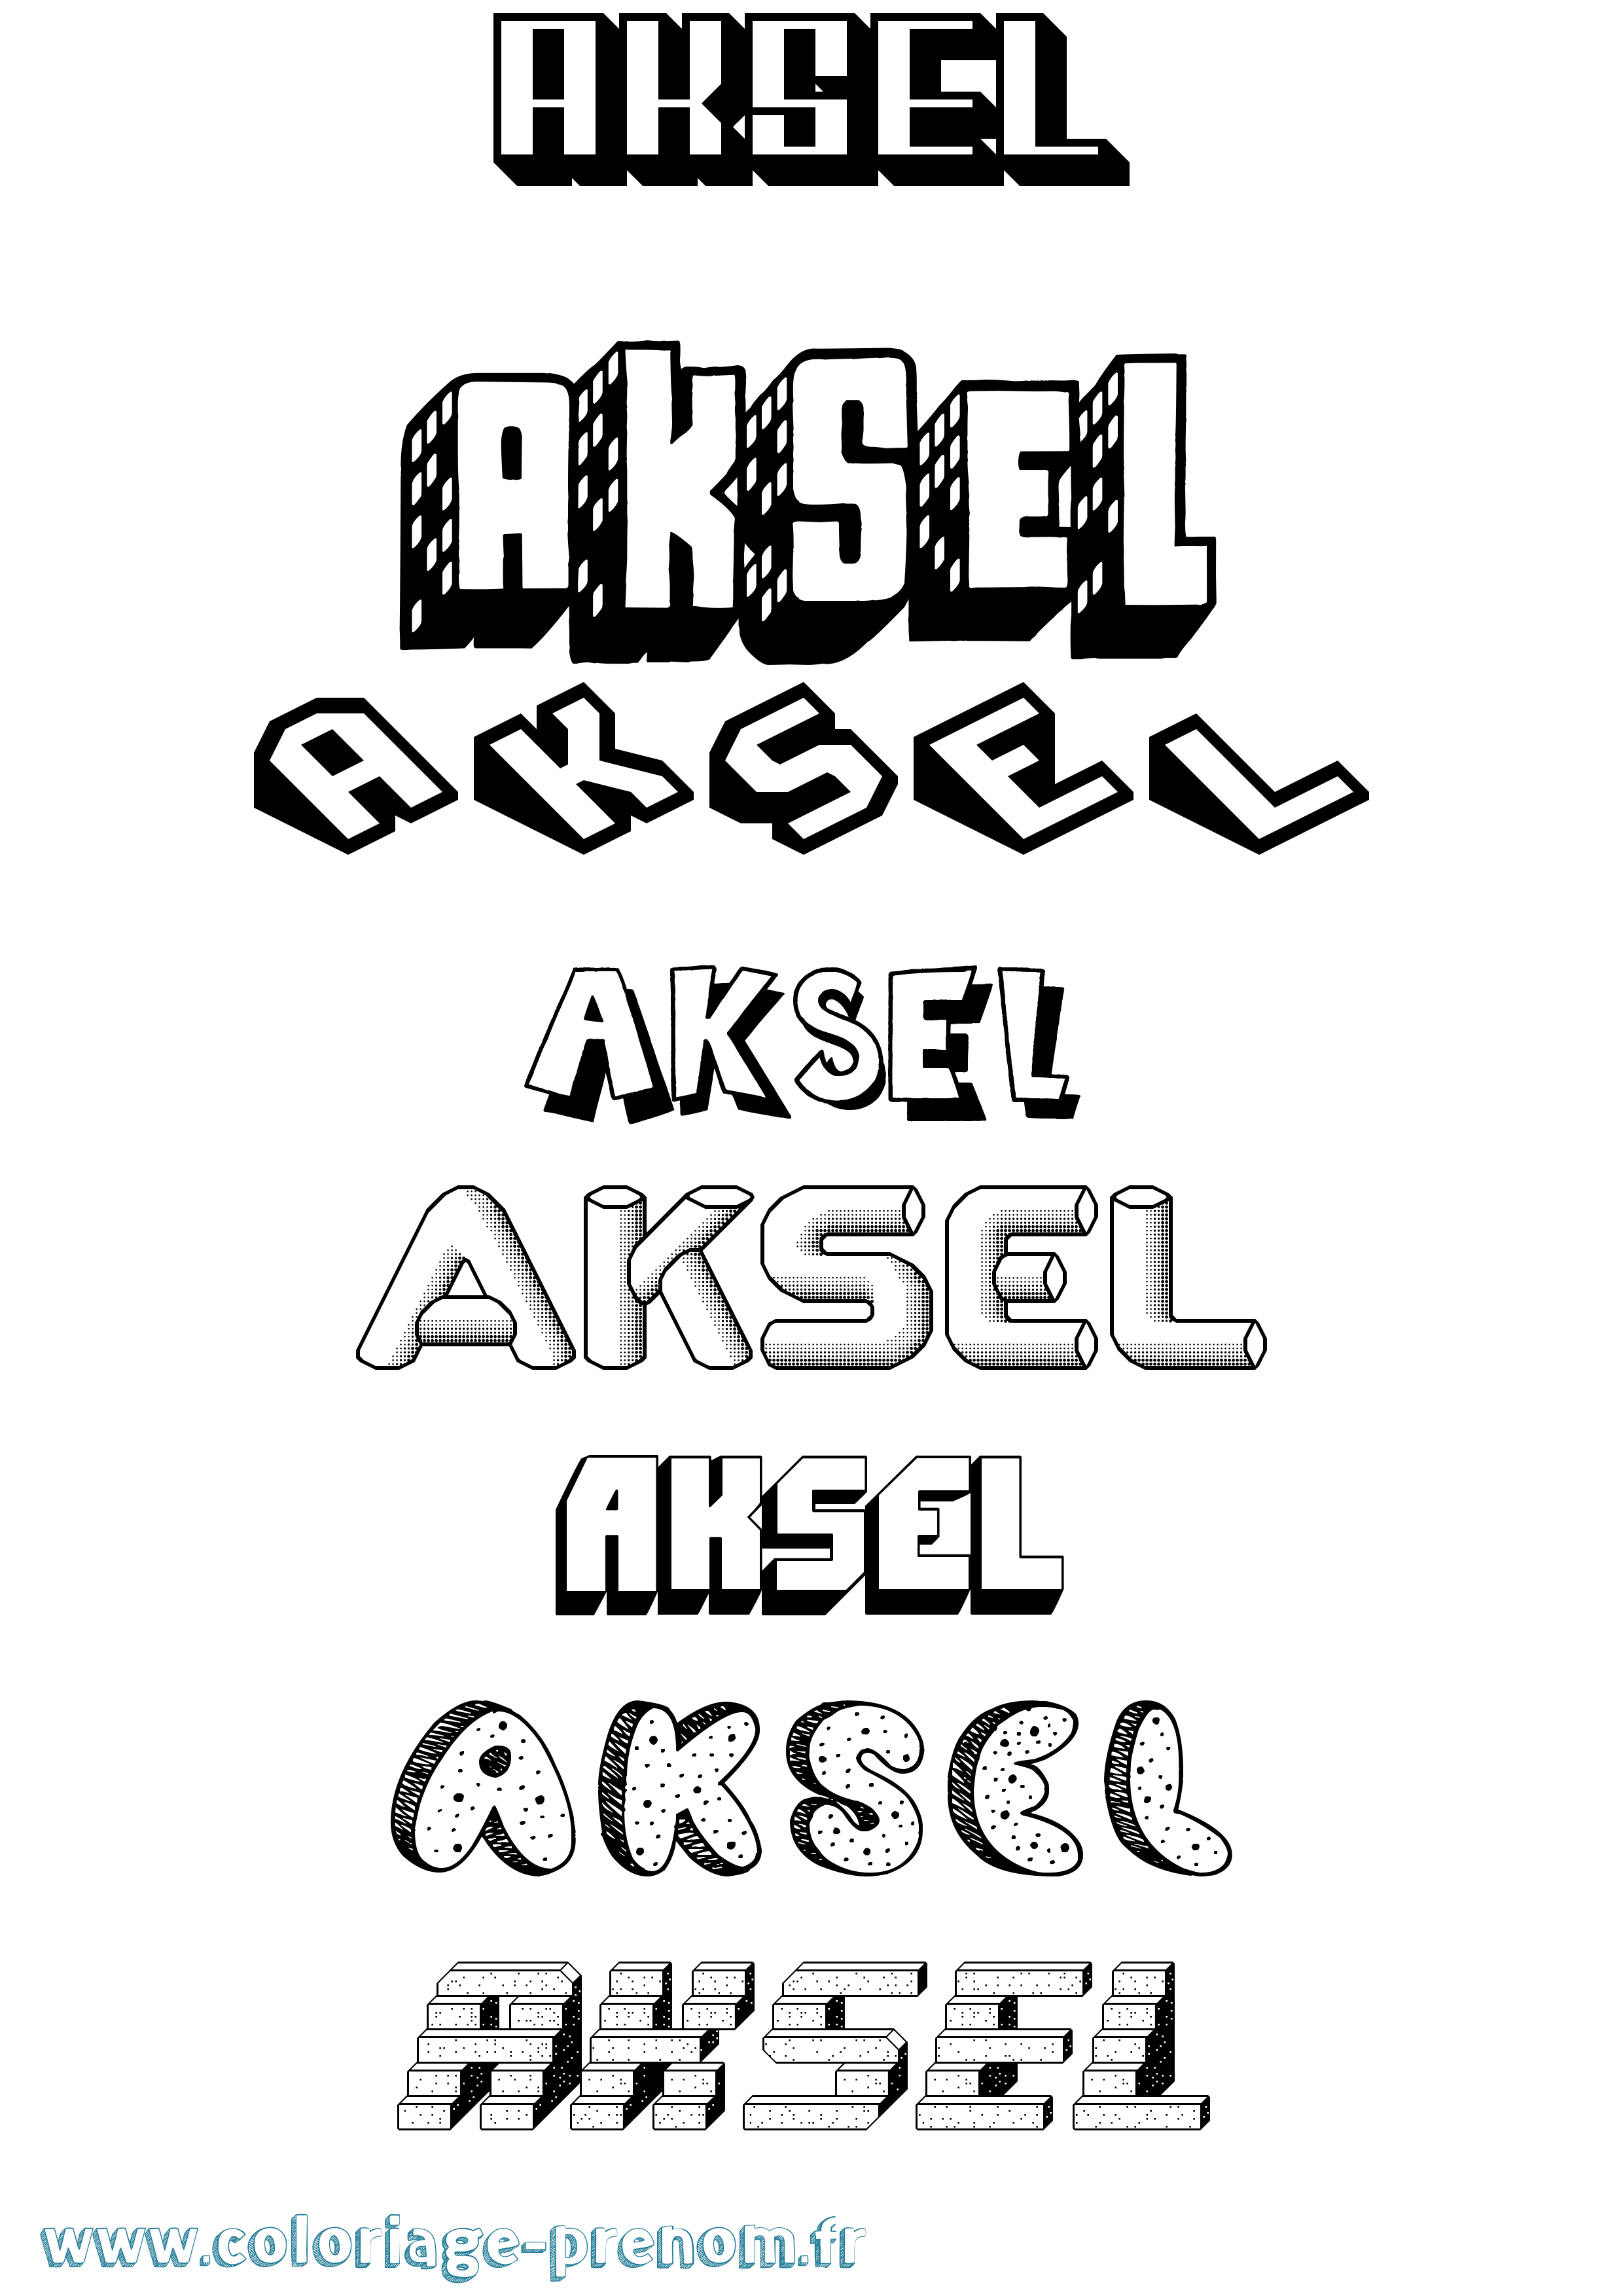 Coloriage prénom Aksel Effet 3D